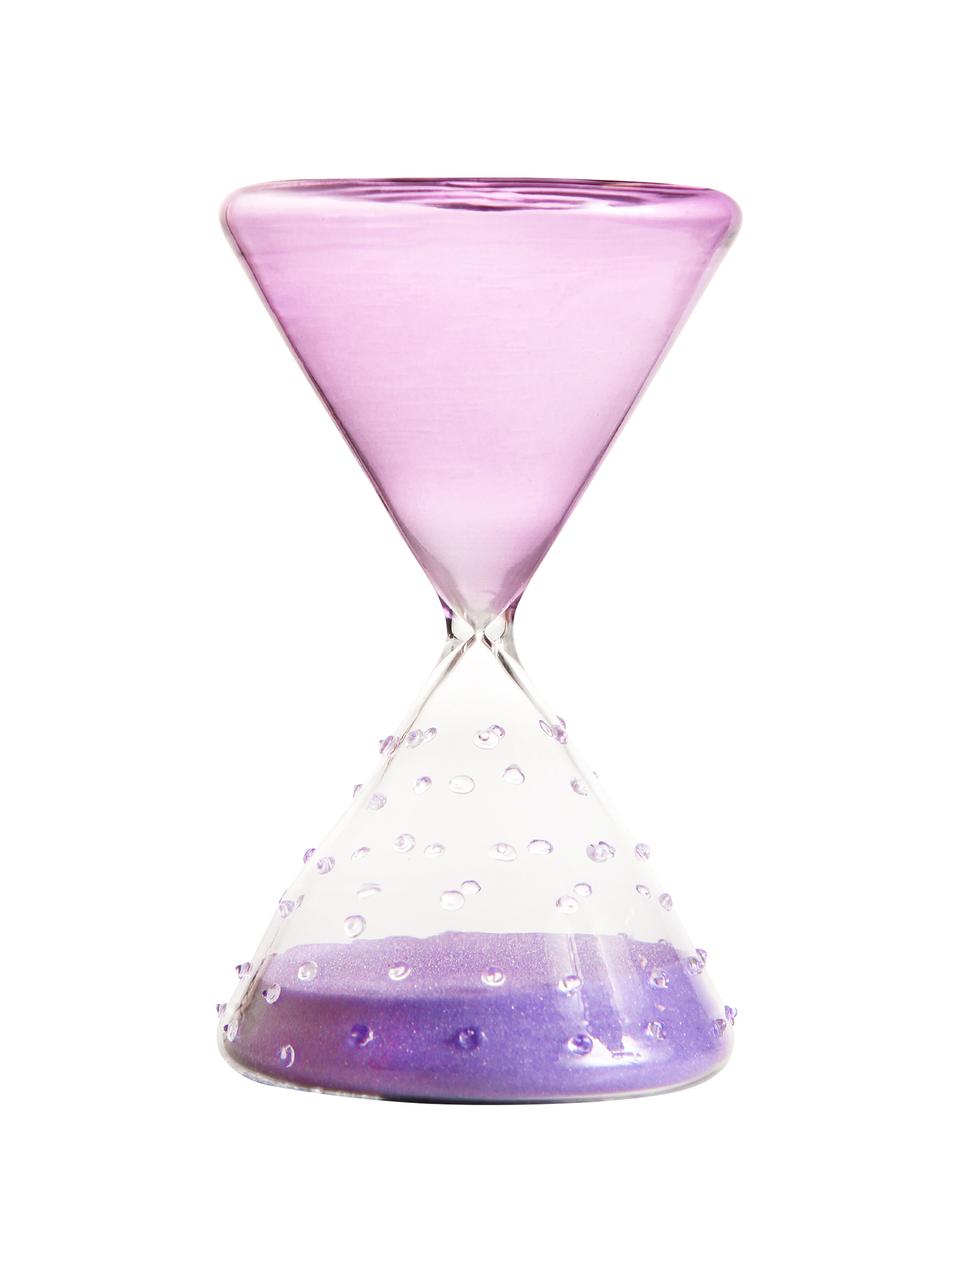 Dekorácia Hourglass, Sklo, Fialová, priehľadná, Ø 10 x V 16 cm